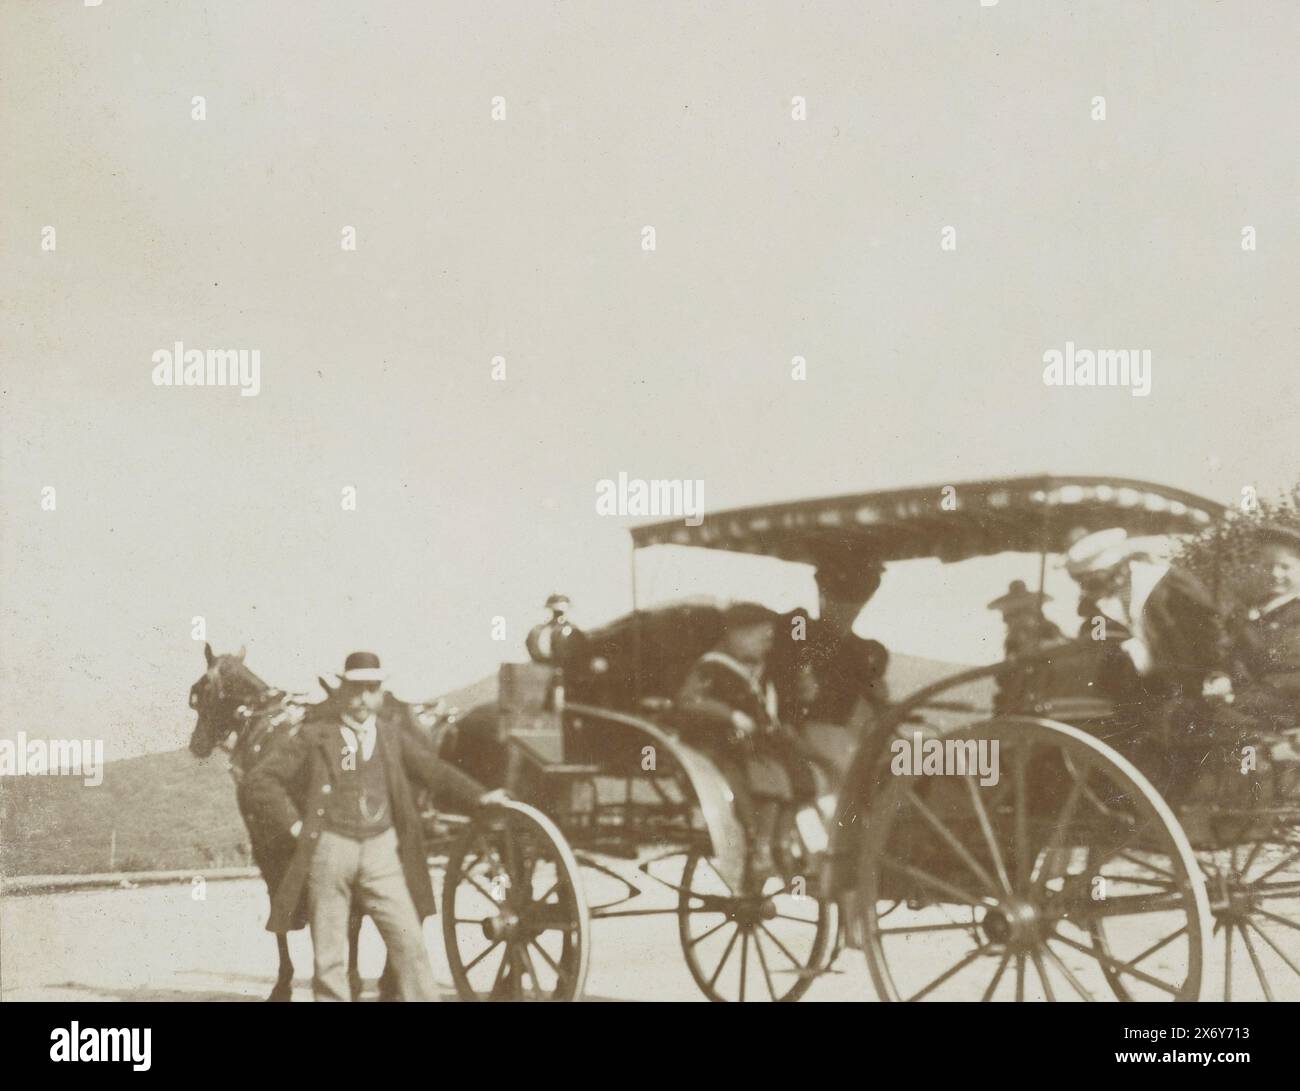 Famiglia Vermeulen in carrozza, Königswinter, questa foto fa parte di un album., Fotografia, David Vermeulen, Königswinter, c. 1895 - c. 1905, carta baryta, altezza, 86 mm x larghezza, 116 mm Foto Stock